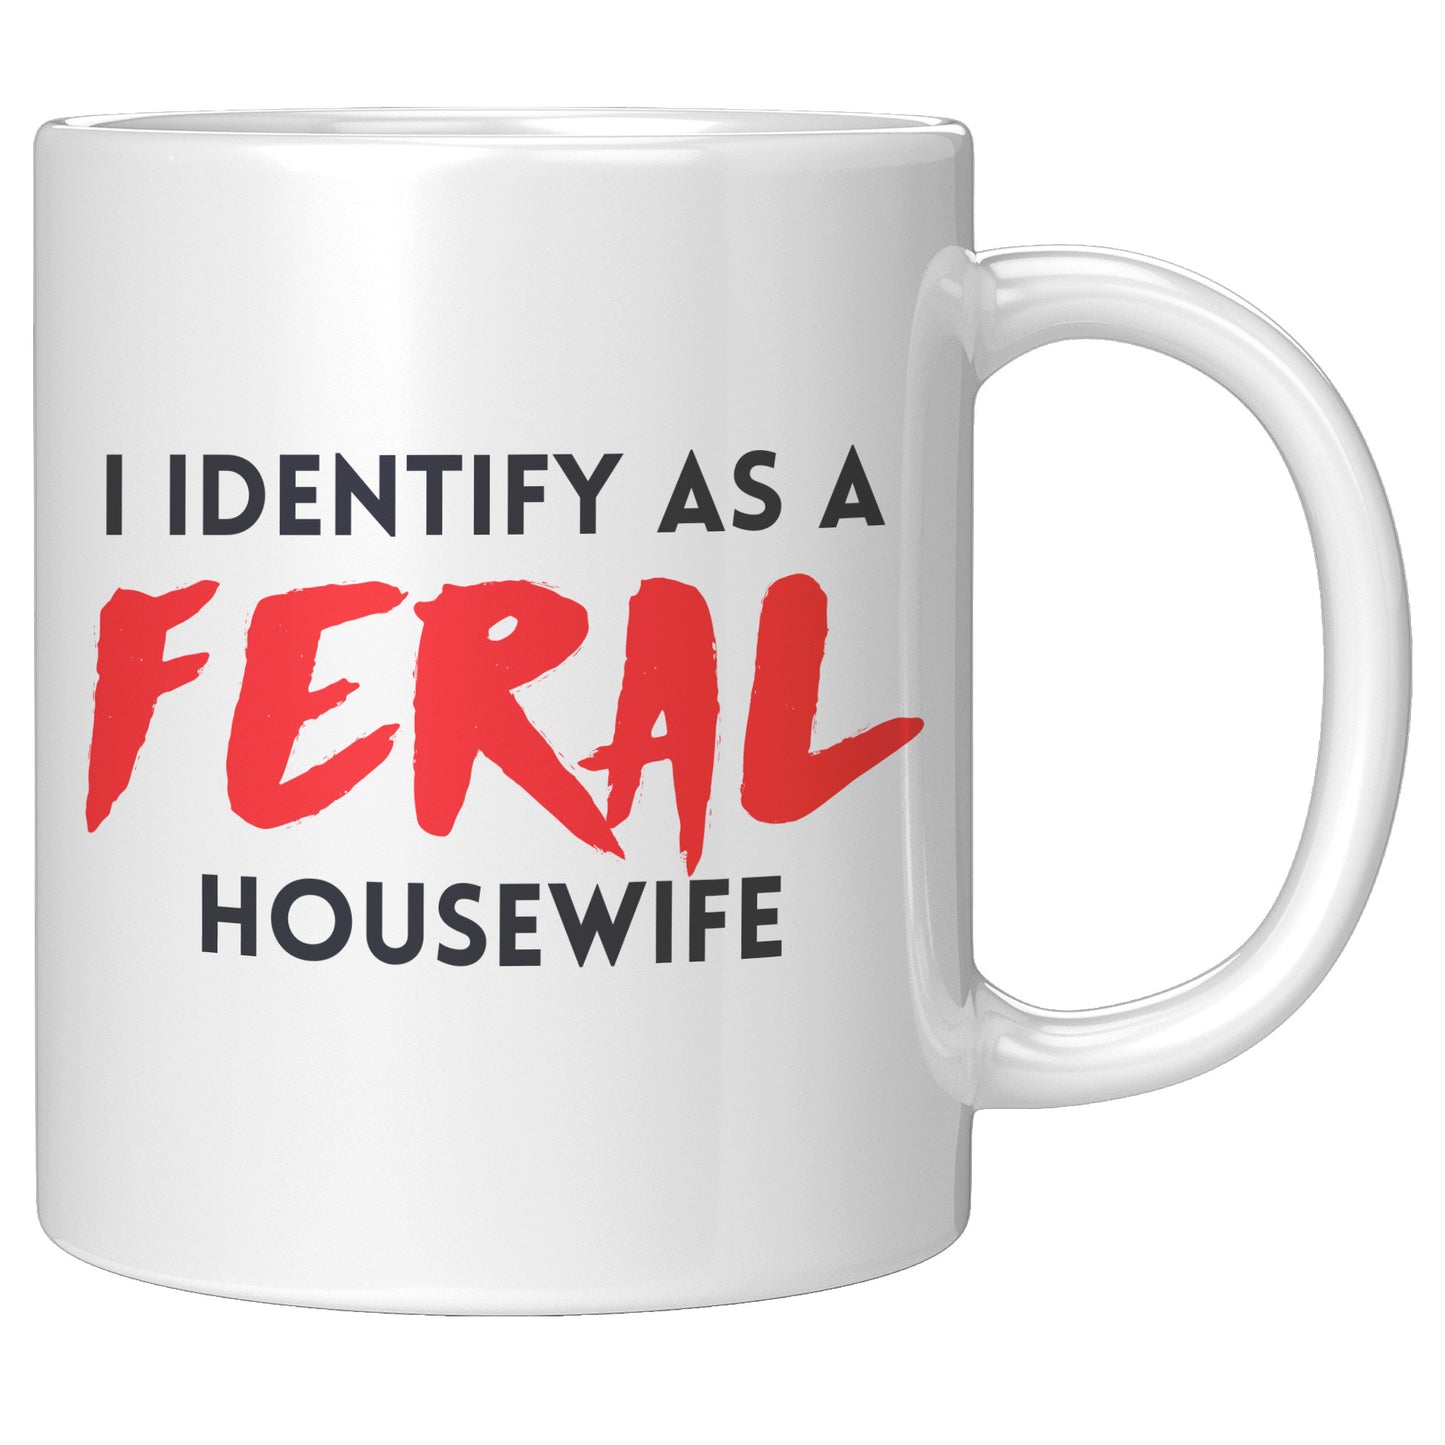 Feral Housewife - Coffee Mug